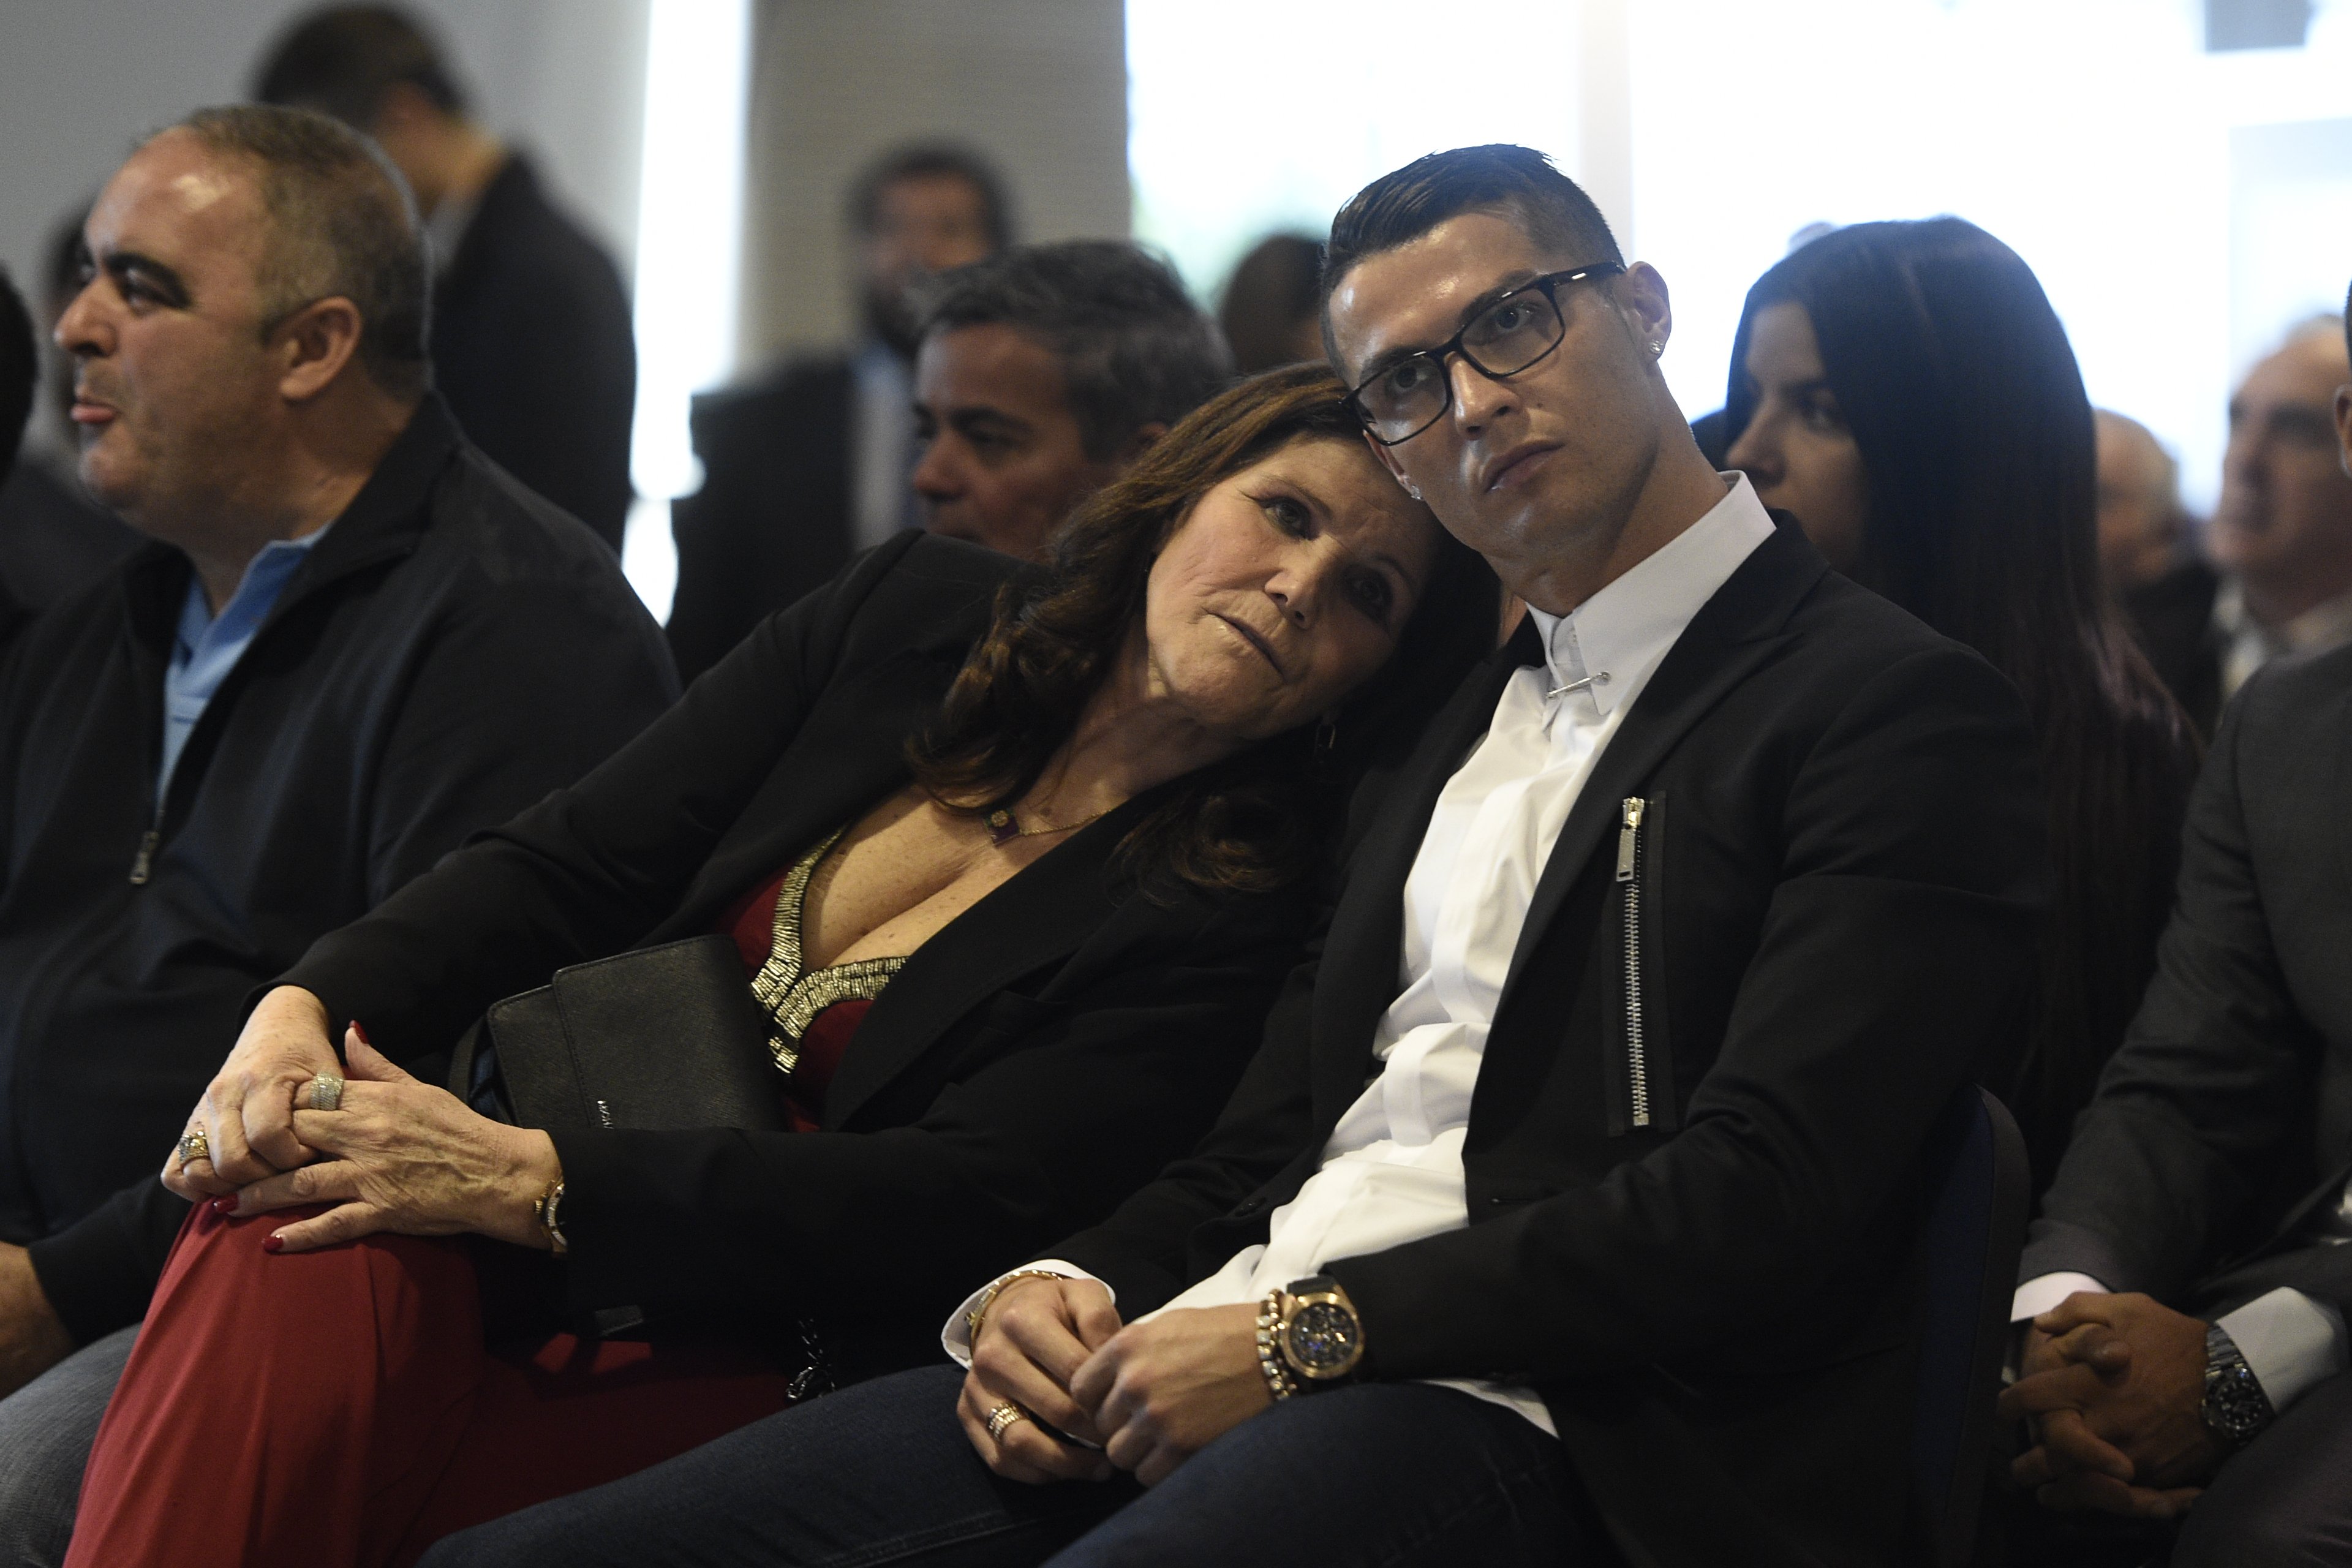 El drama de Cristiano Ronaldo con su madre: "Lucho por mi vida"